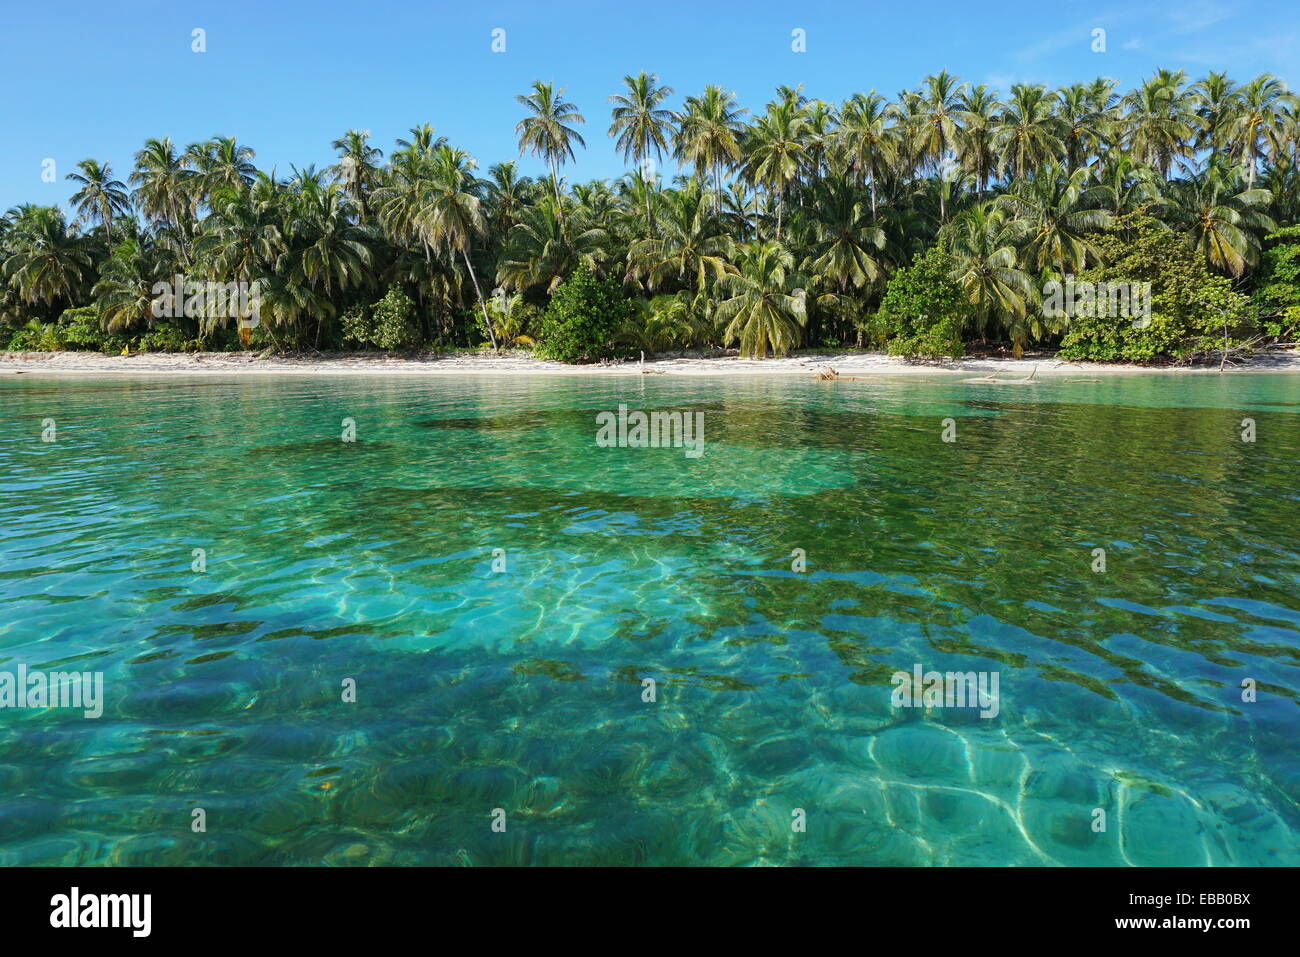 Spiaggia caraibica con lussureggiante vegetazione tropicale e acqua limpida, vista dal mare Foto Stock